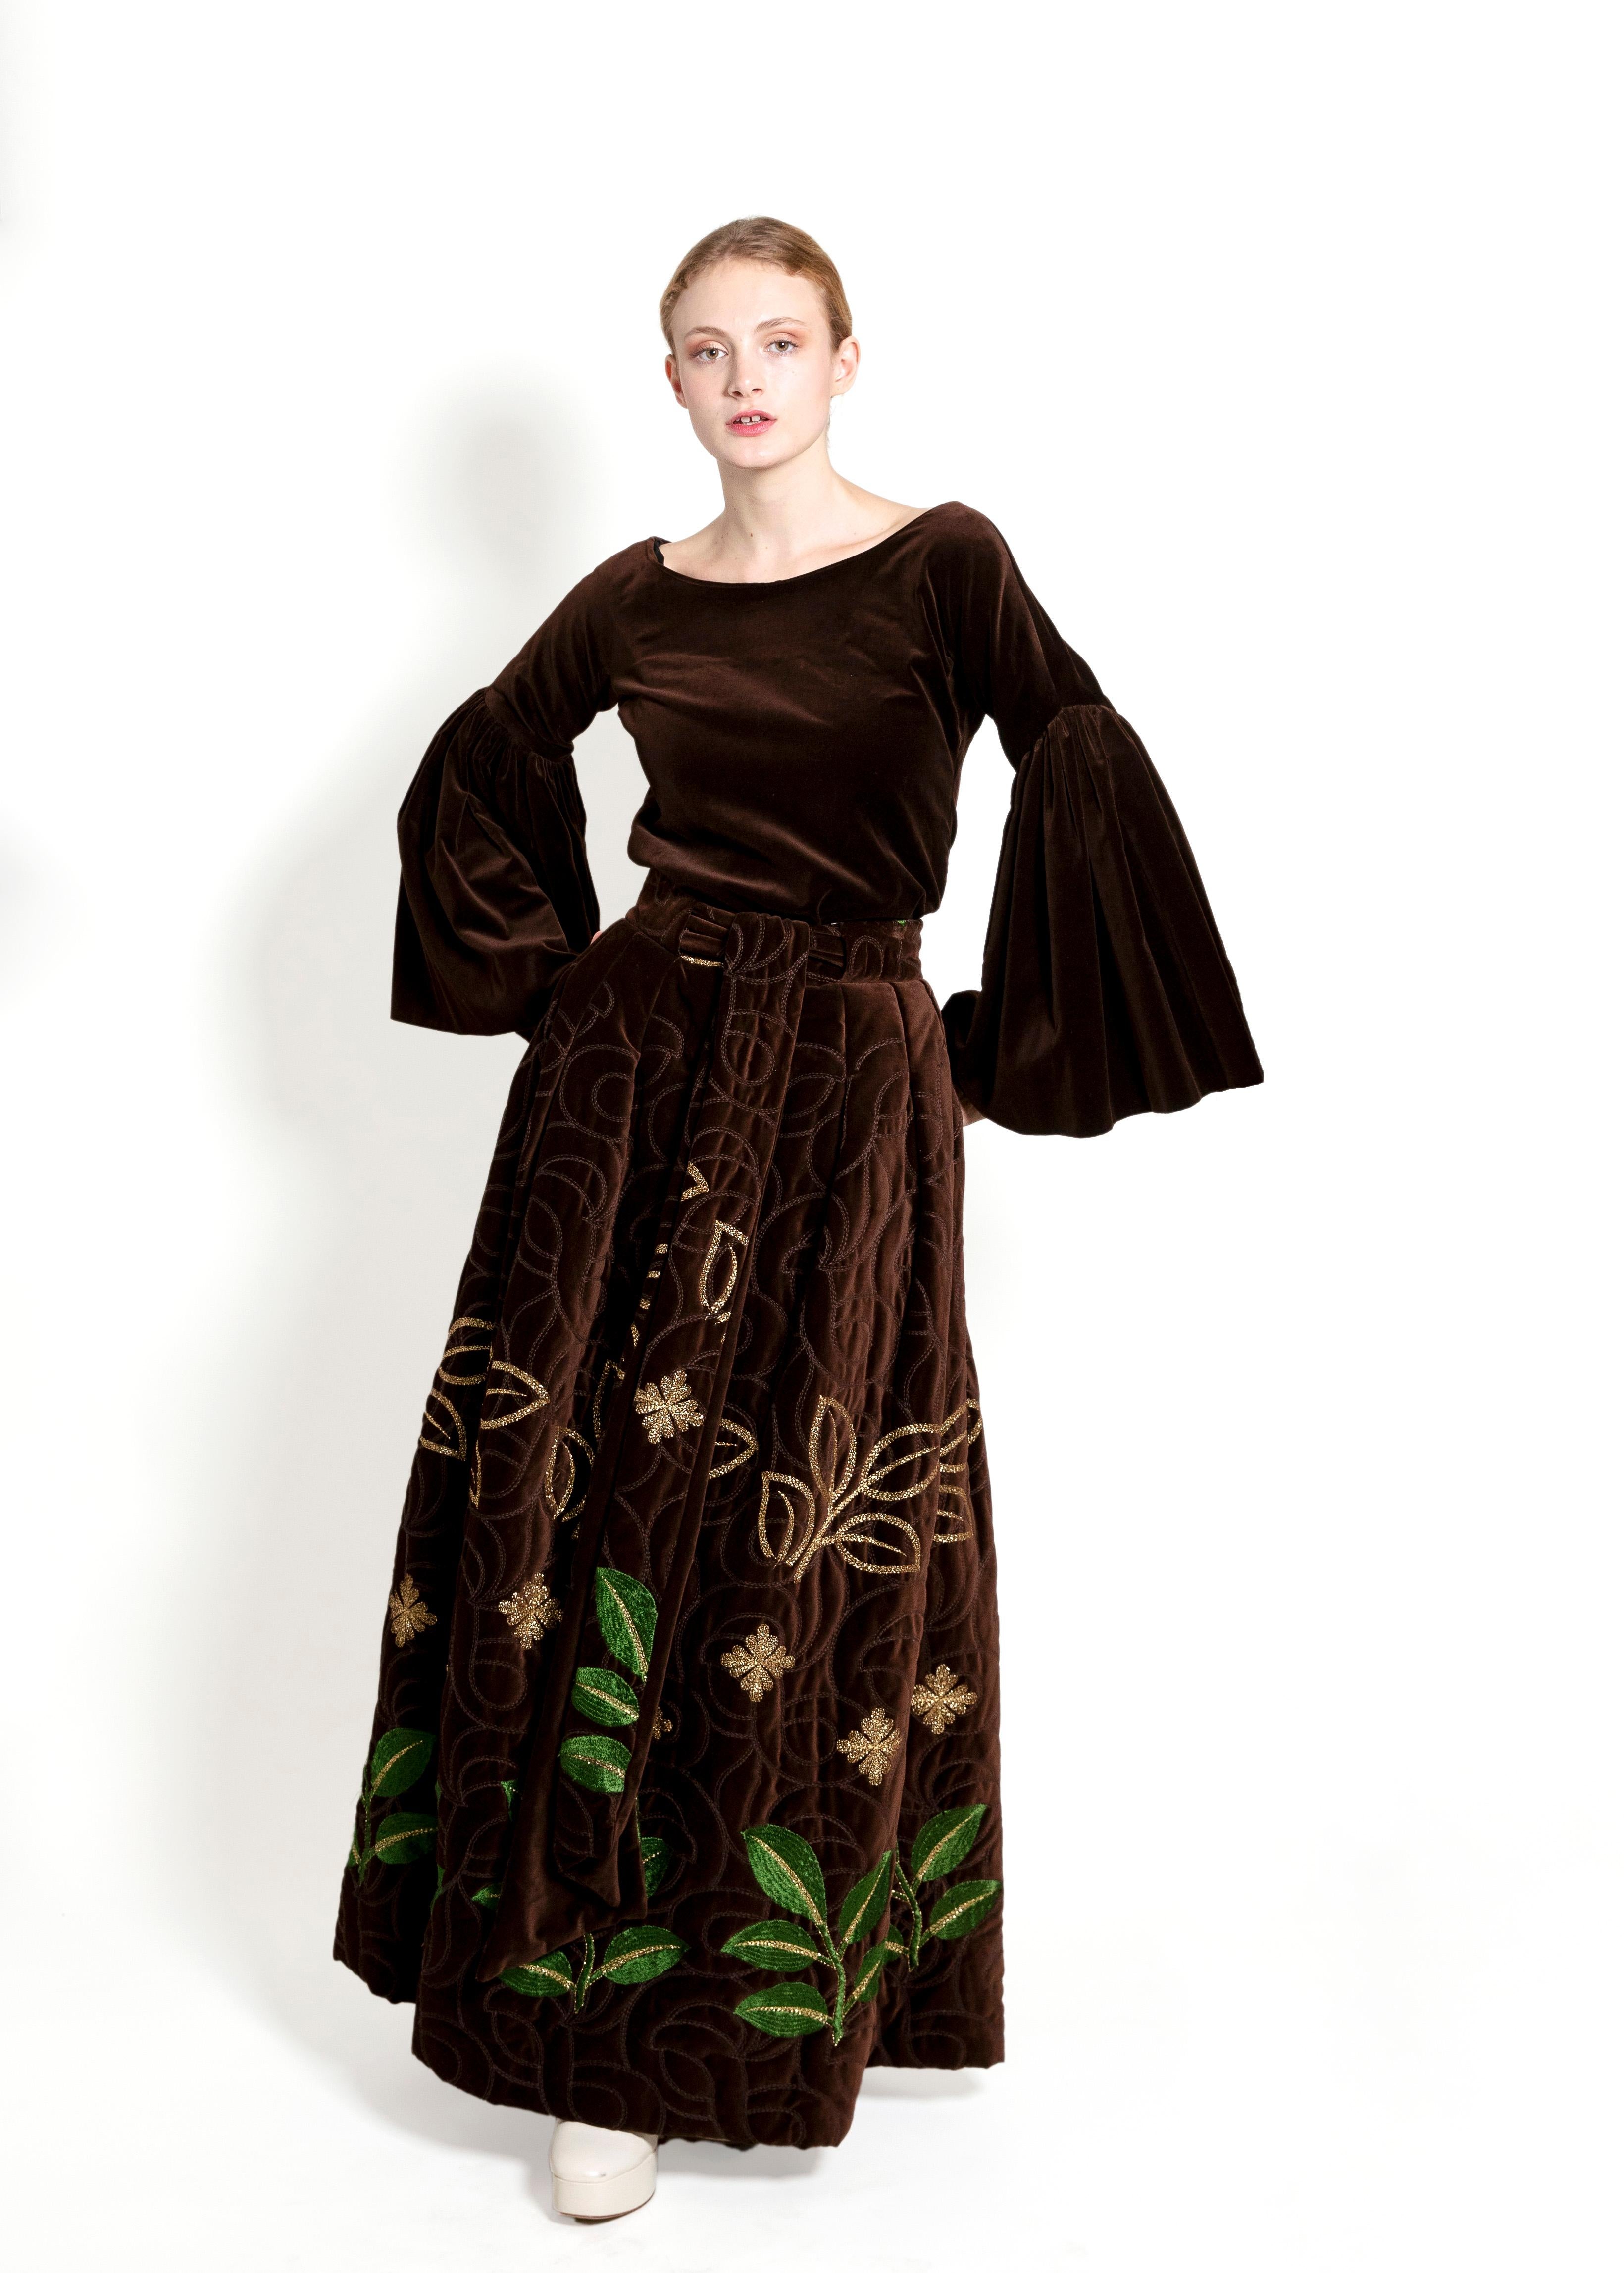 Erleben Sie die subtile Eleganz des Adolfo 1969 Choc Brn Velvet Embroidered Skirt Set. Dieses dokumentierte Meisterwerk aus der Herbst-Winter-Kollektion 1969-1970 ist aus Samt gefertigt und mit aufwendigen Stickereien versehen, die für einen